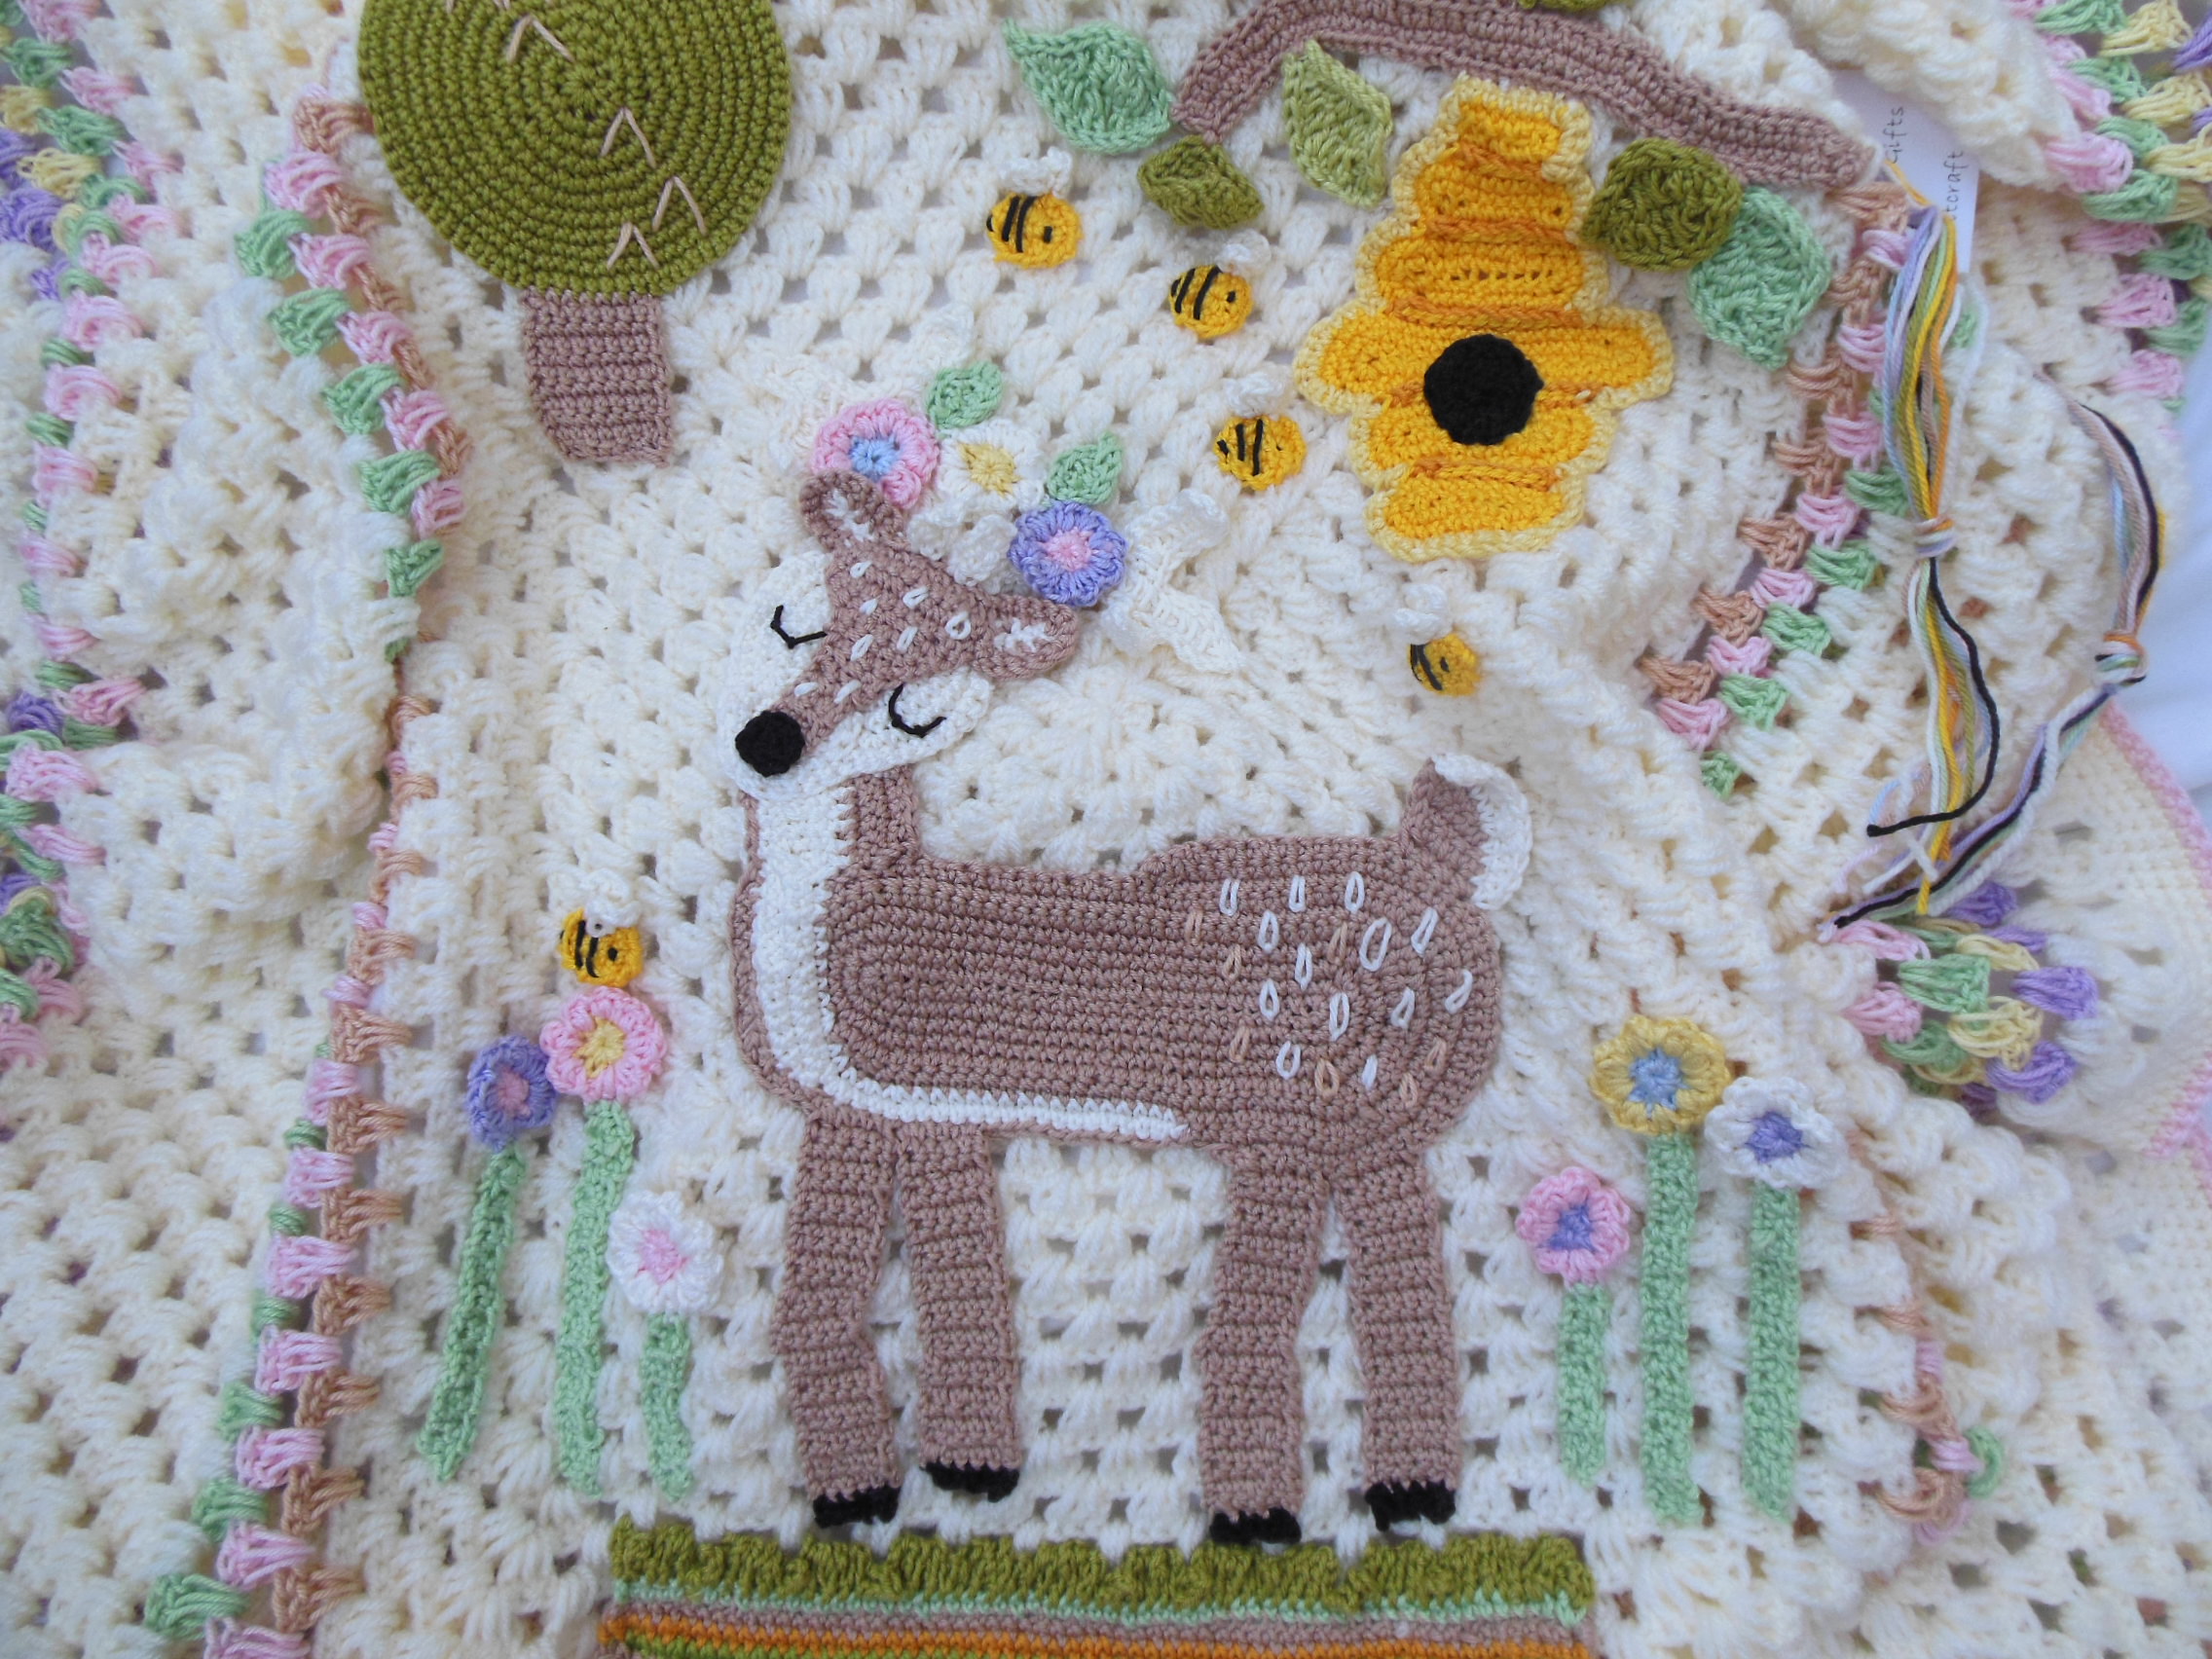 Lovey beige baby comforter pram Woodland Deer blanket decorative crochet 3 in 1 Crochet folding blanket Bambi Easter hunting blanket crib